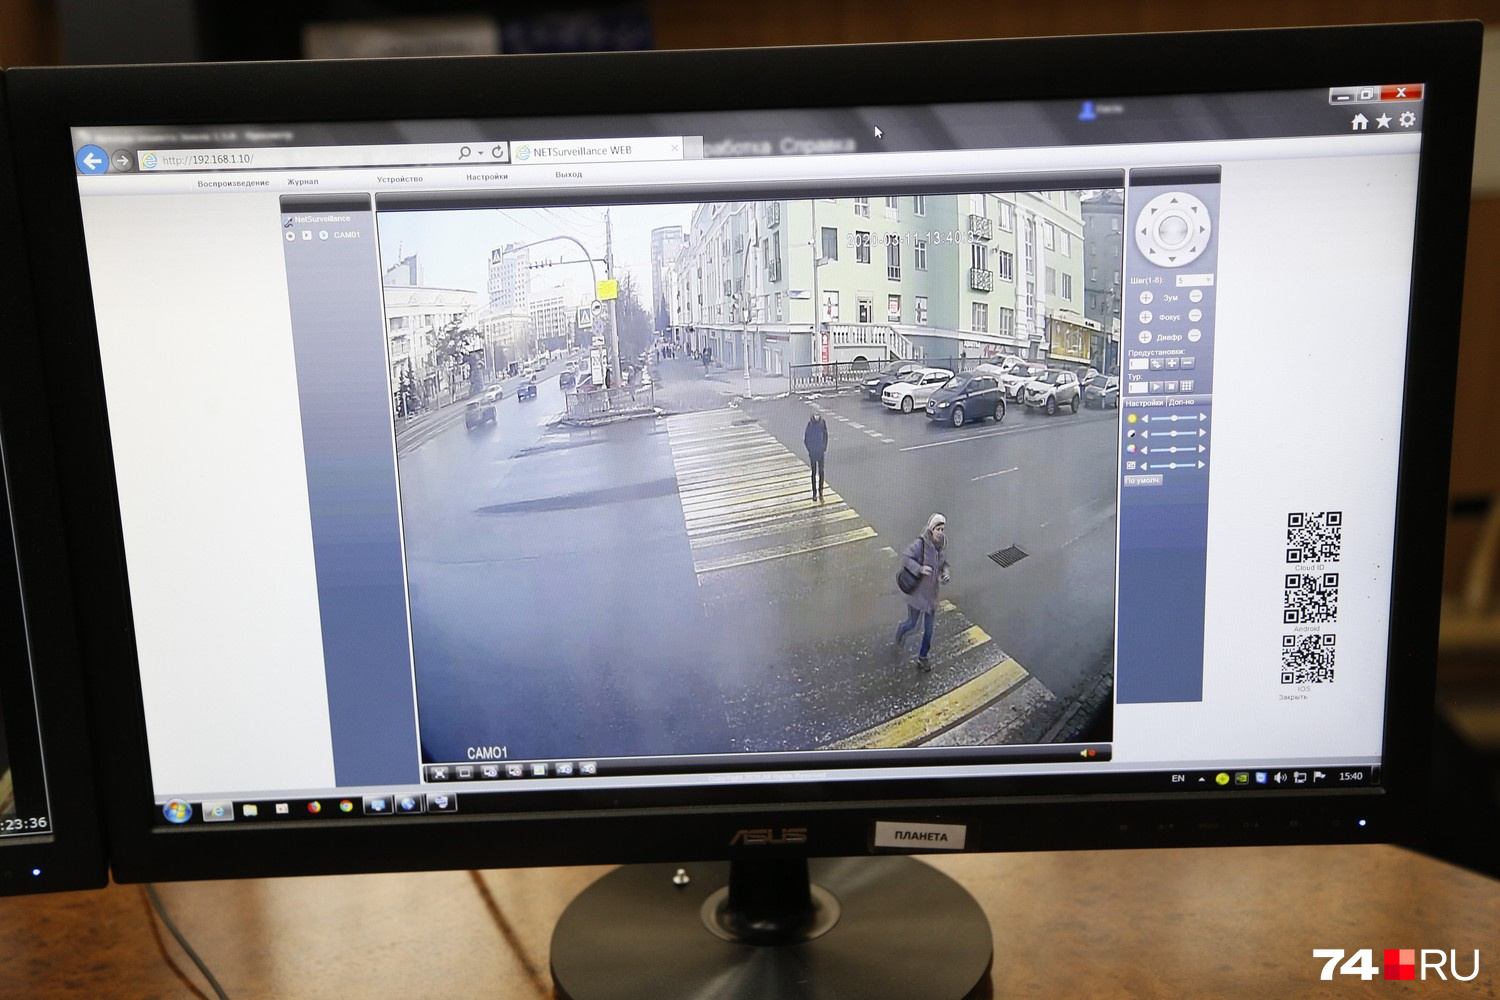 Камера с разрешением всего 5 МП позволяет распознавать лица пешеходов и отслеживать их маршрут. Это делается не для слежки, а чтобы составить карты пешеходных потоков. Так что улыбайтесь — вас снимают и узнают